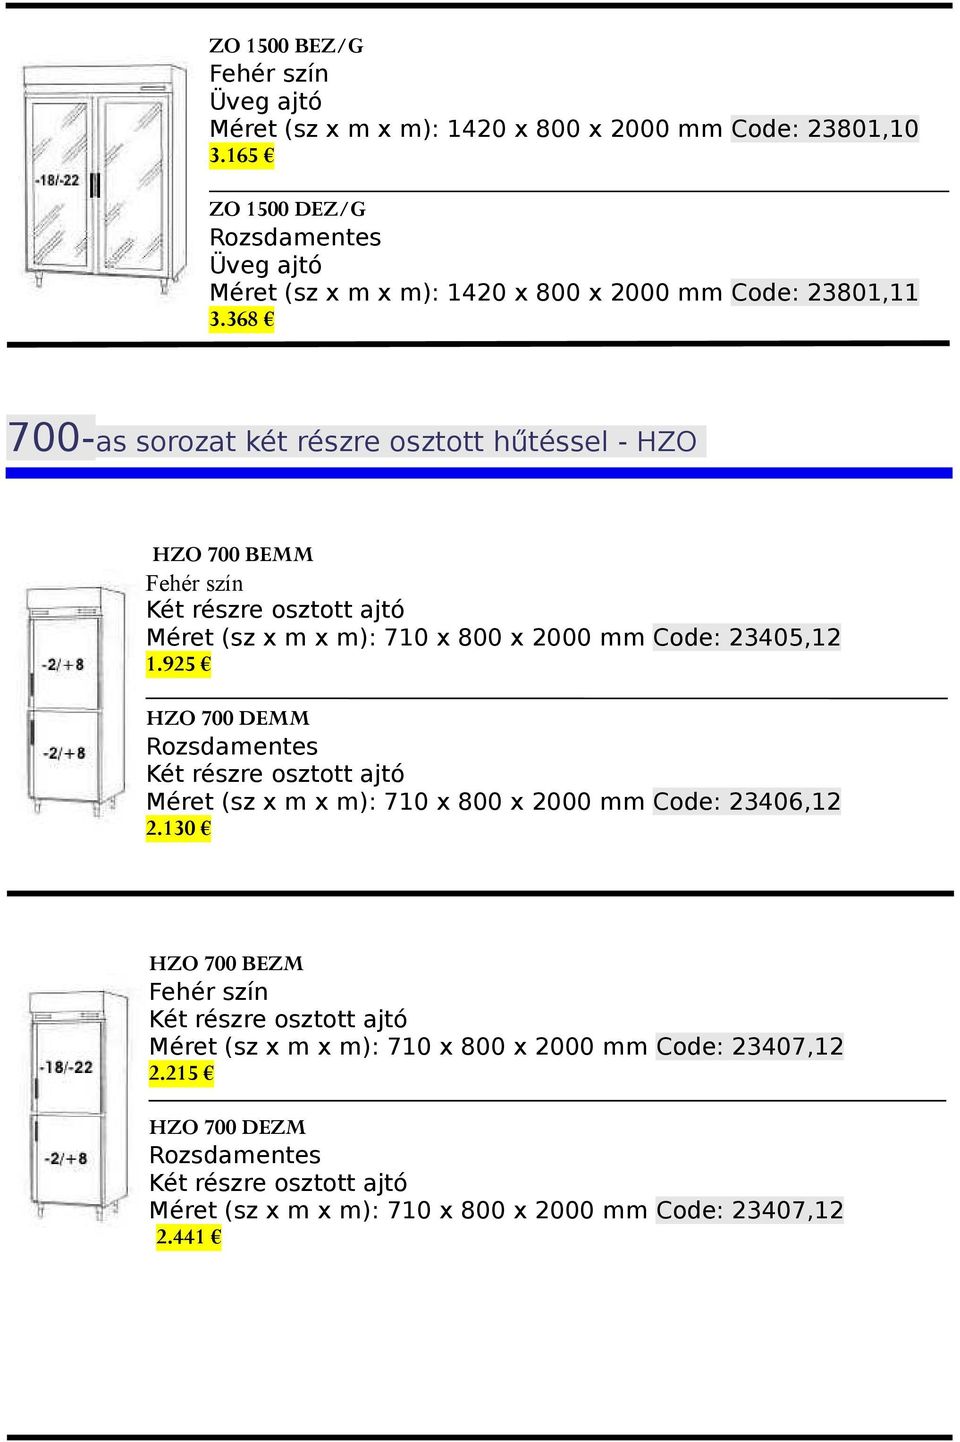 925 HZO 700 DEMM Két részre osztott ajtó Méret (sz x m x m): 710 x 800 x 2000 mm Code: 23406,12 2.